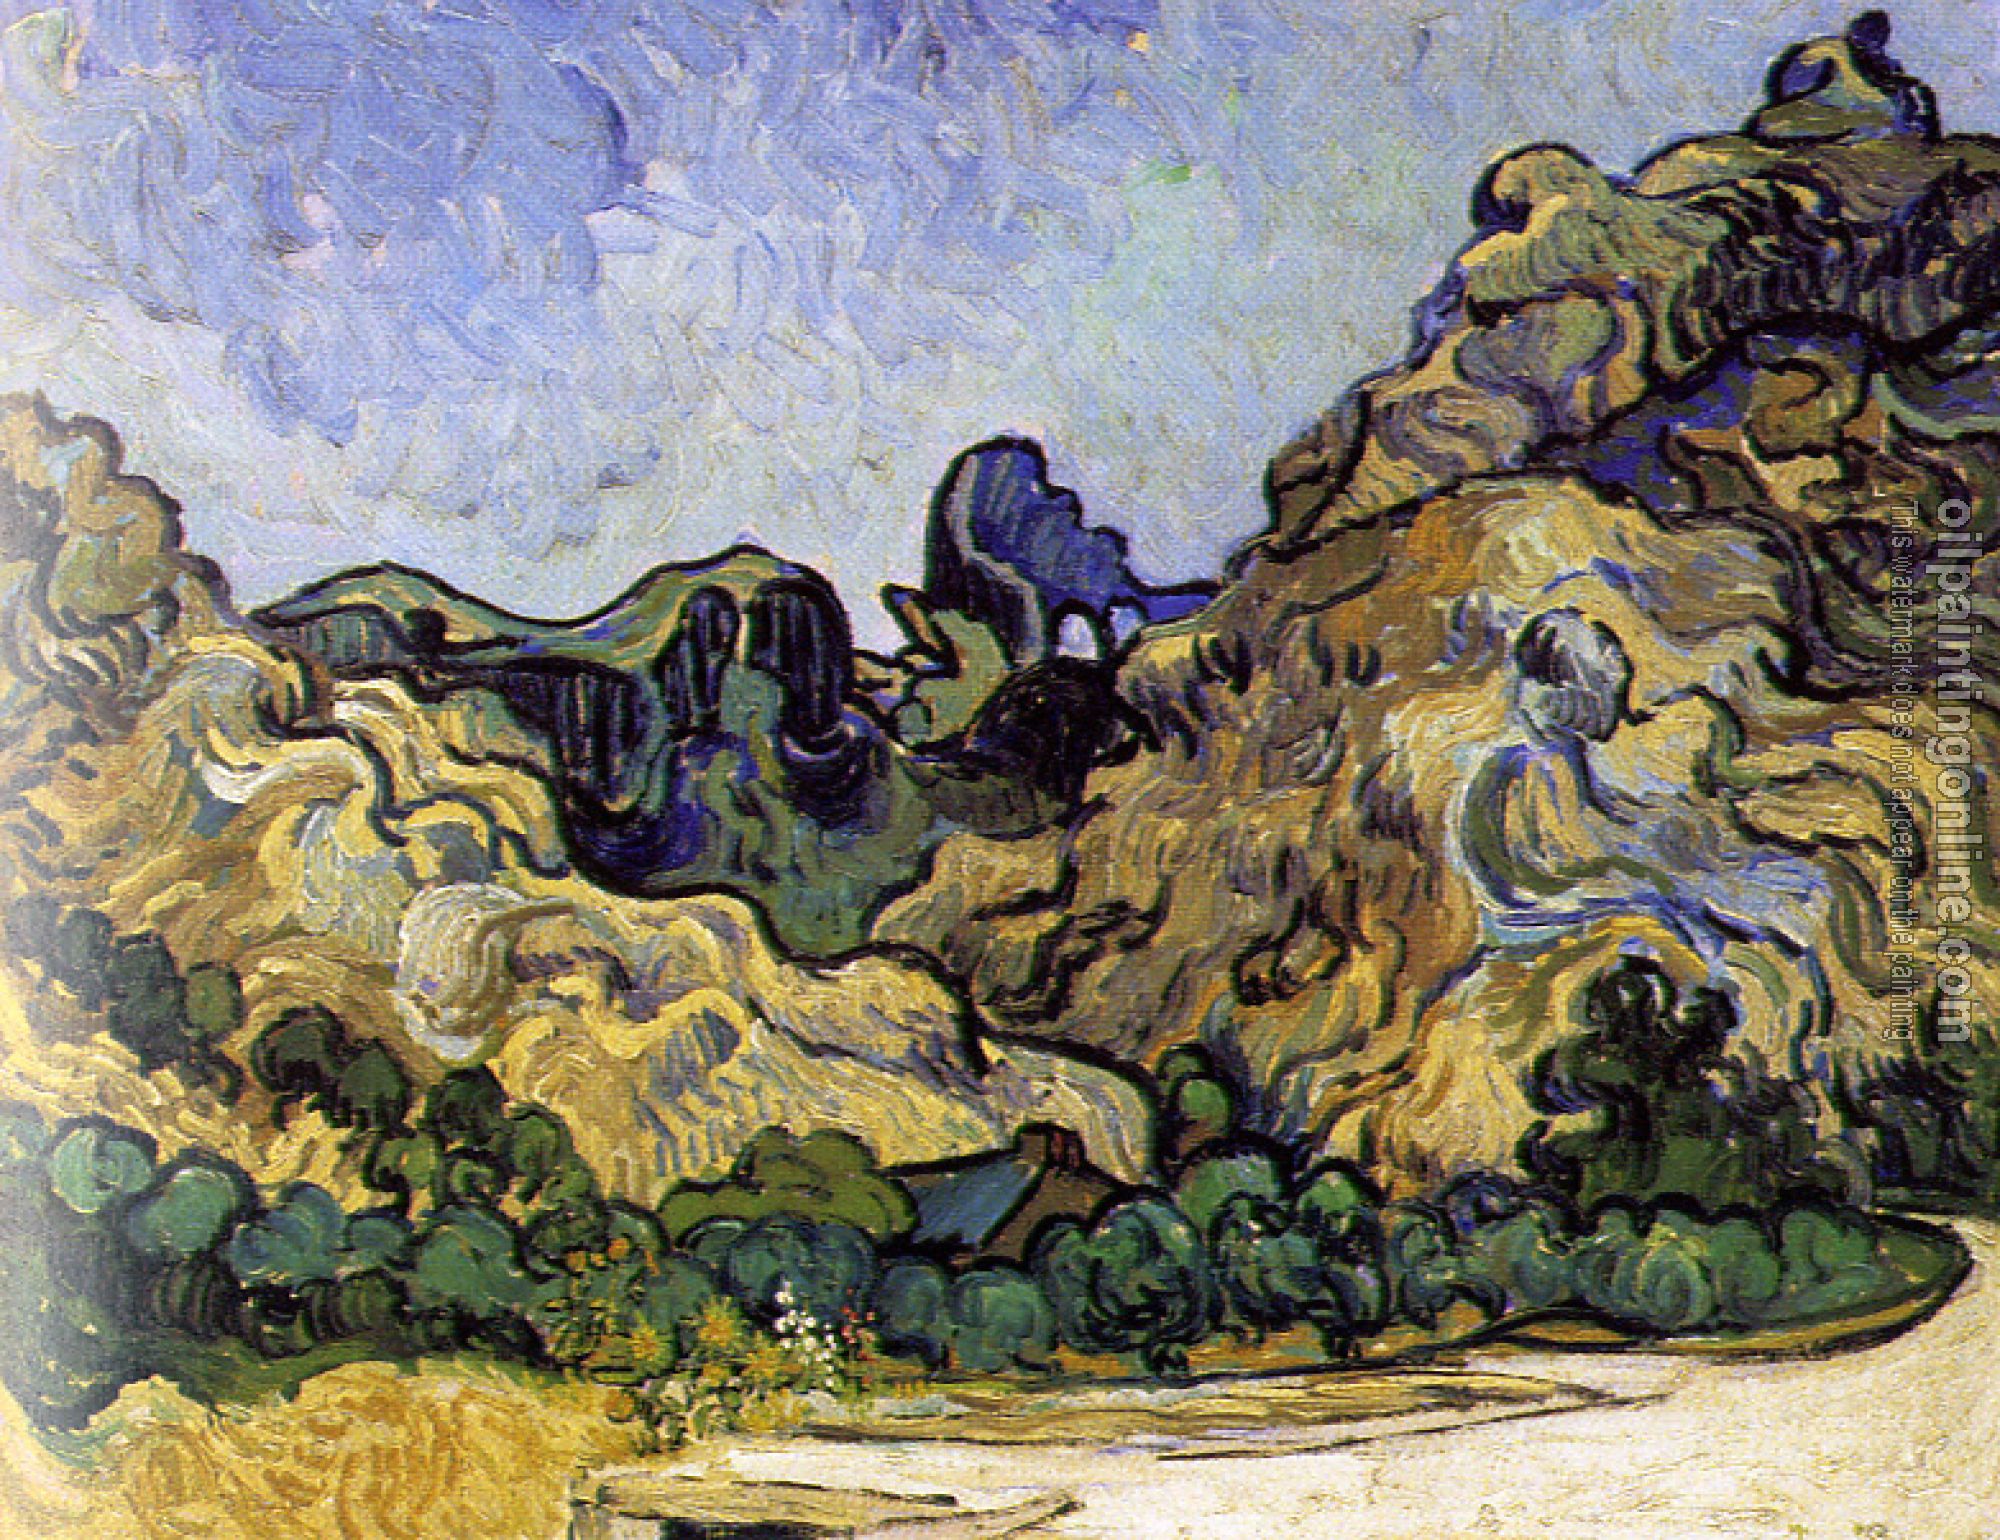 Gogh, Vincent van - Mountains with Dark Hut